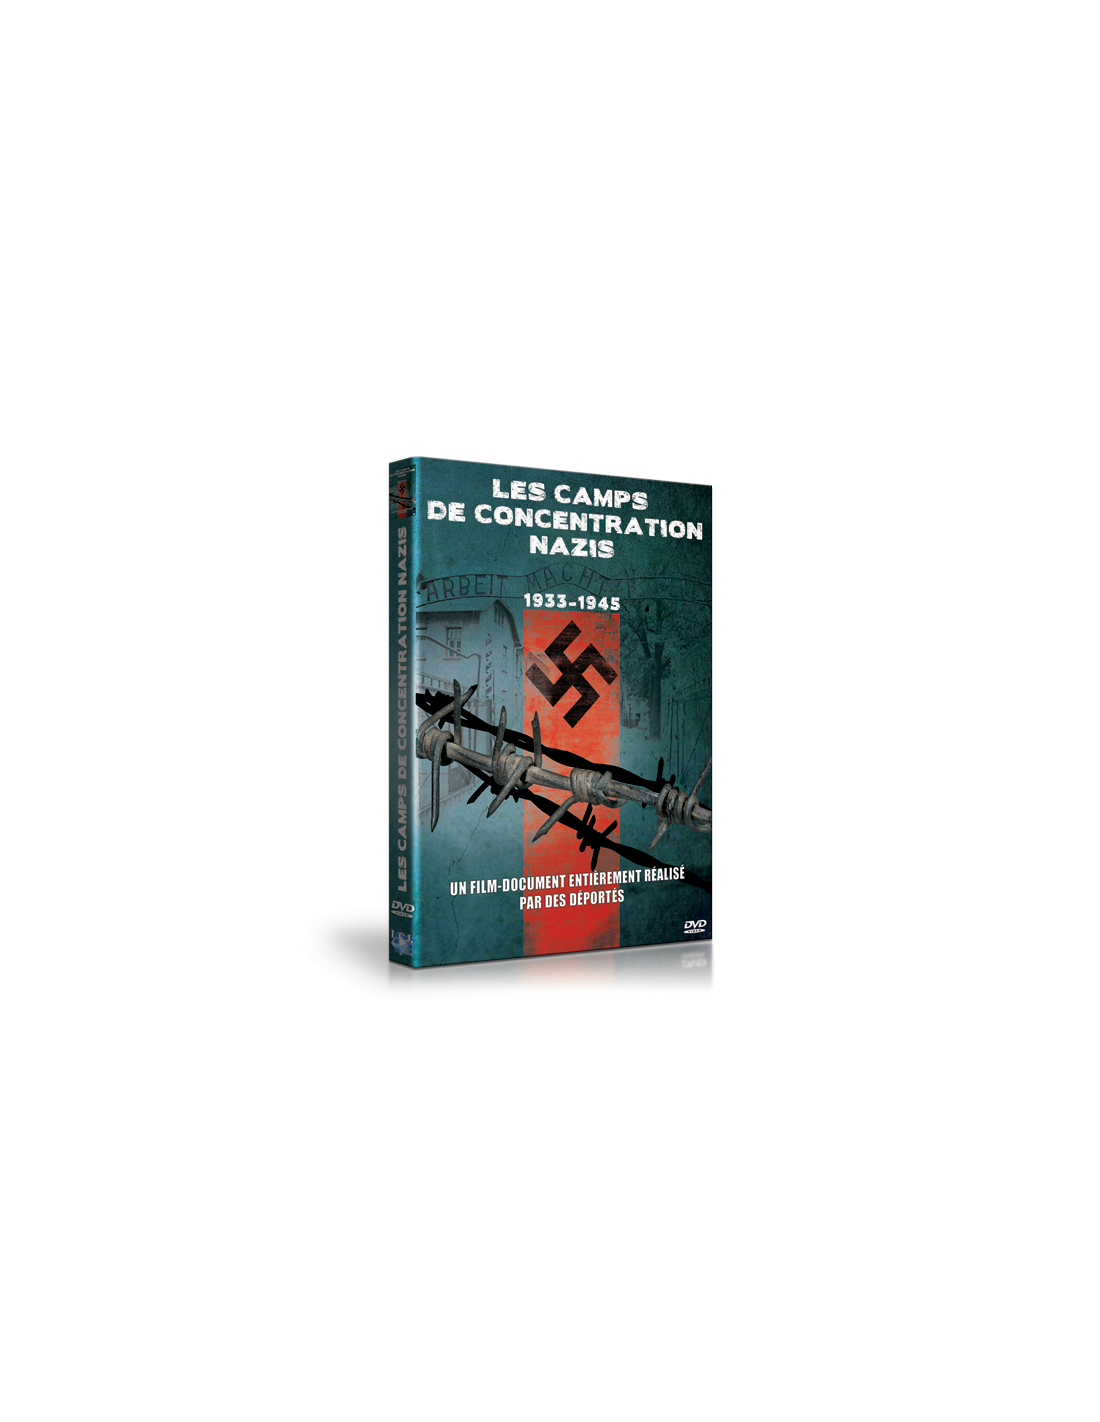 Livre Sur Les Camps De Concentration Les camps de concentration nazis - LCJ Editions